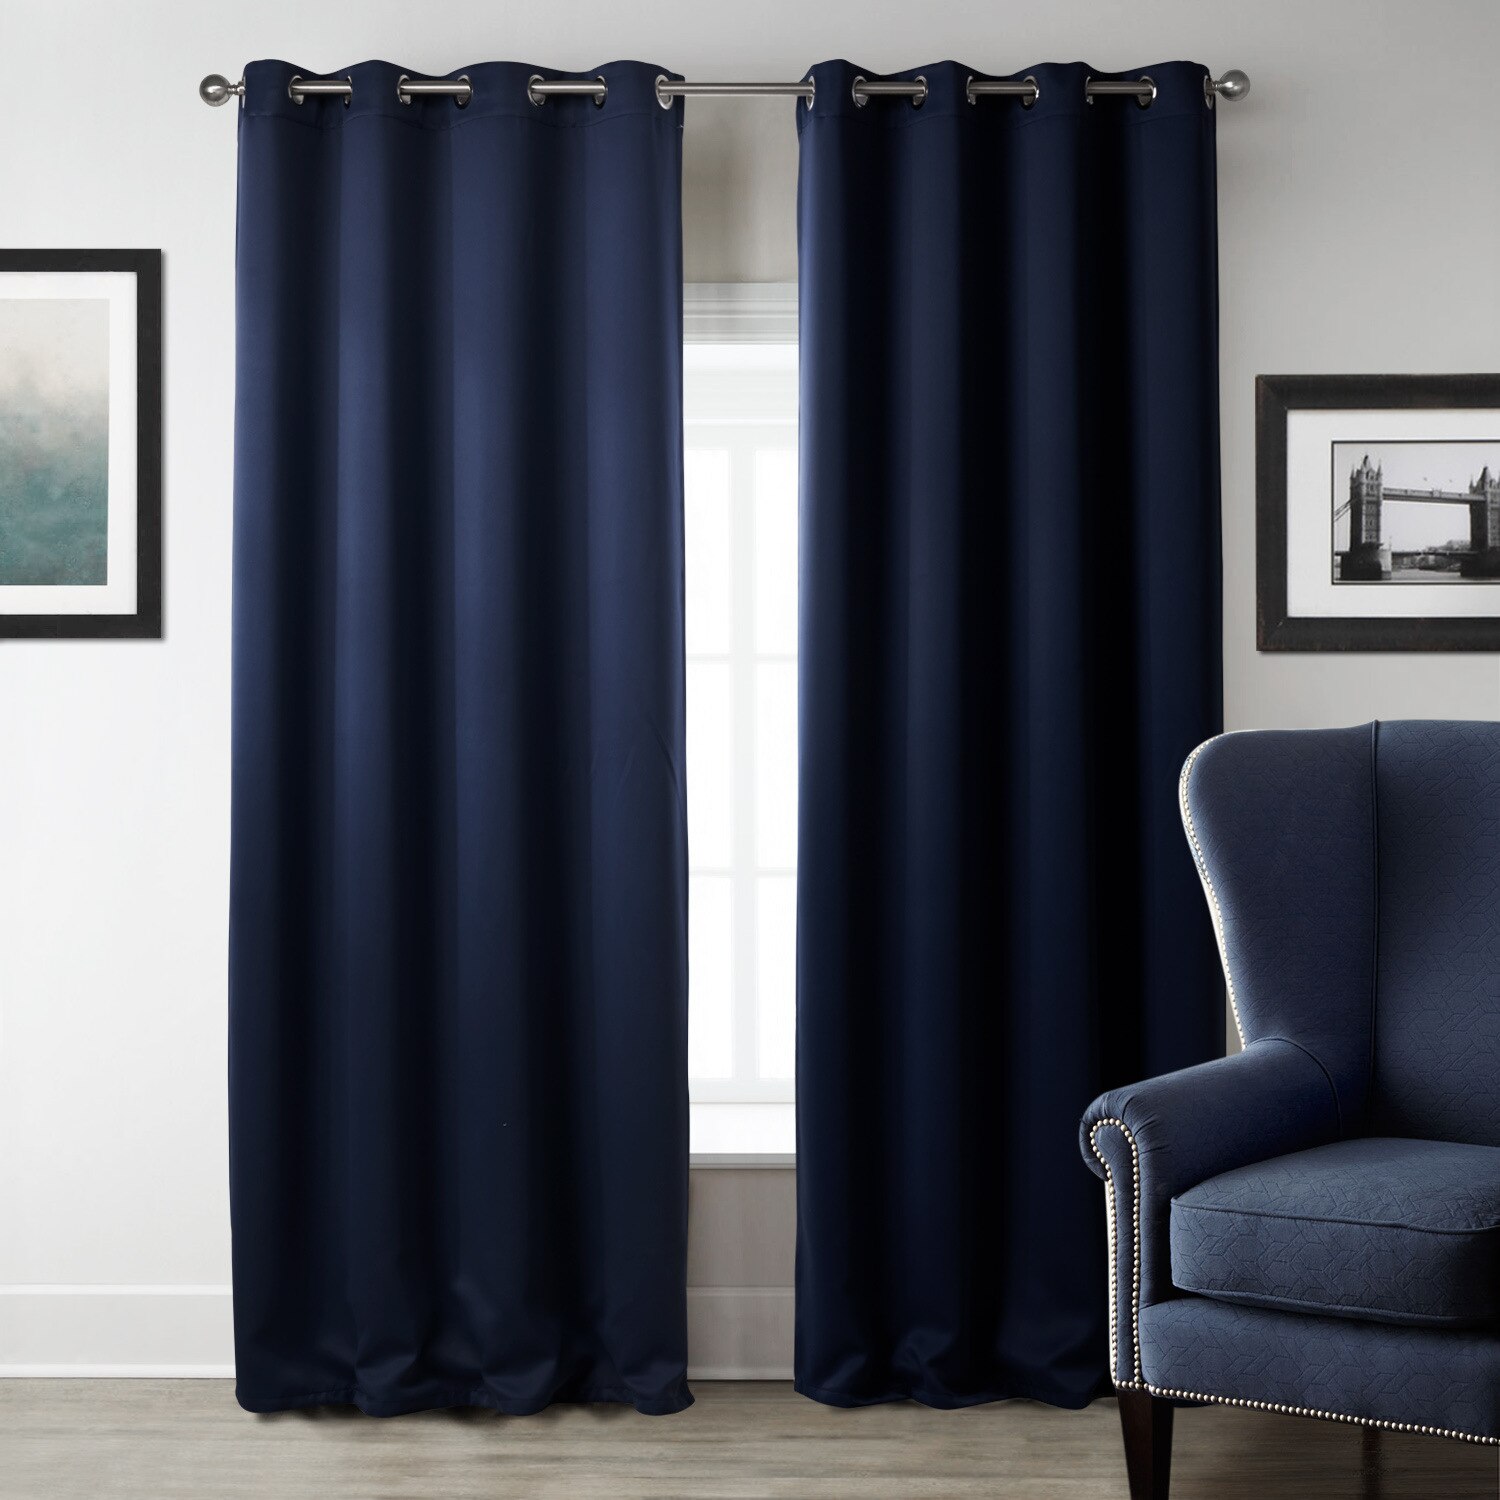 Ren farve gardin mørkeblå soveværelse skygge klud gardin bløde husholdningsartikler hjem tekstilprodukter: 140 x 240cm